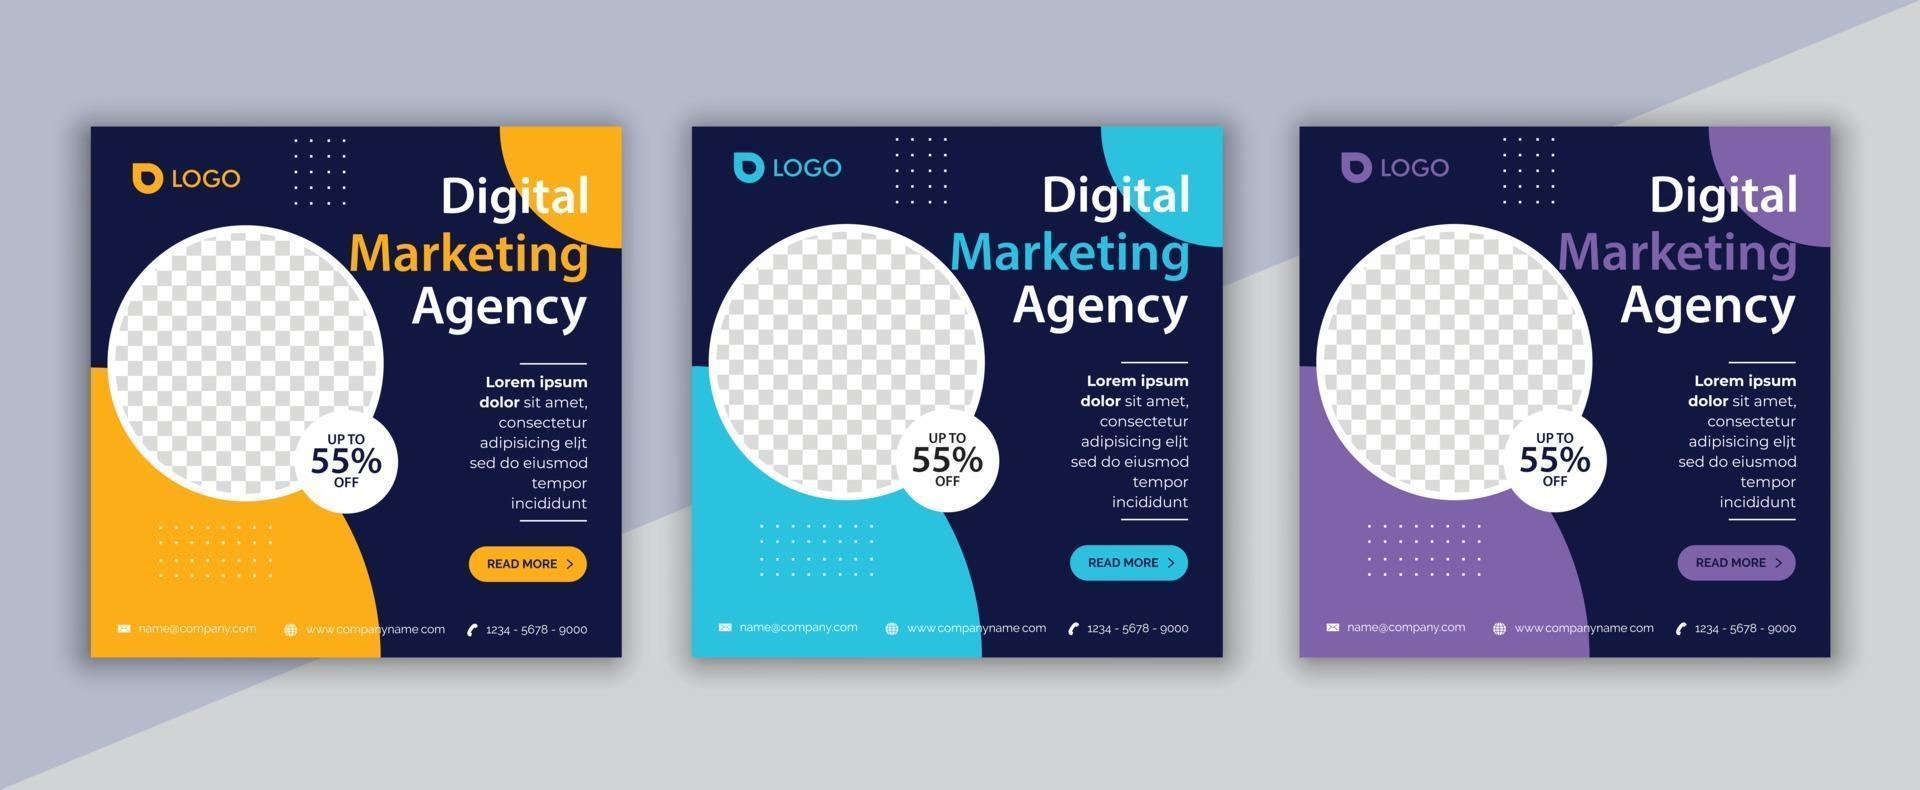 Digitales Marketing Social Media Post, Business Marketing Flyer Design vektor